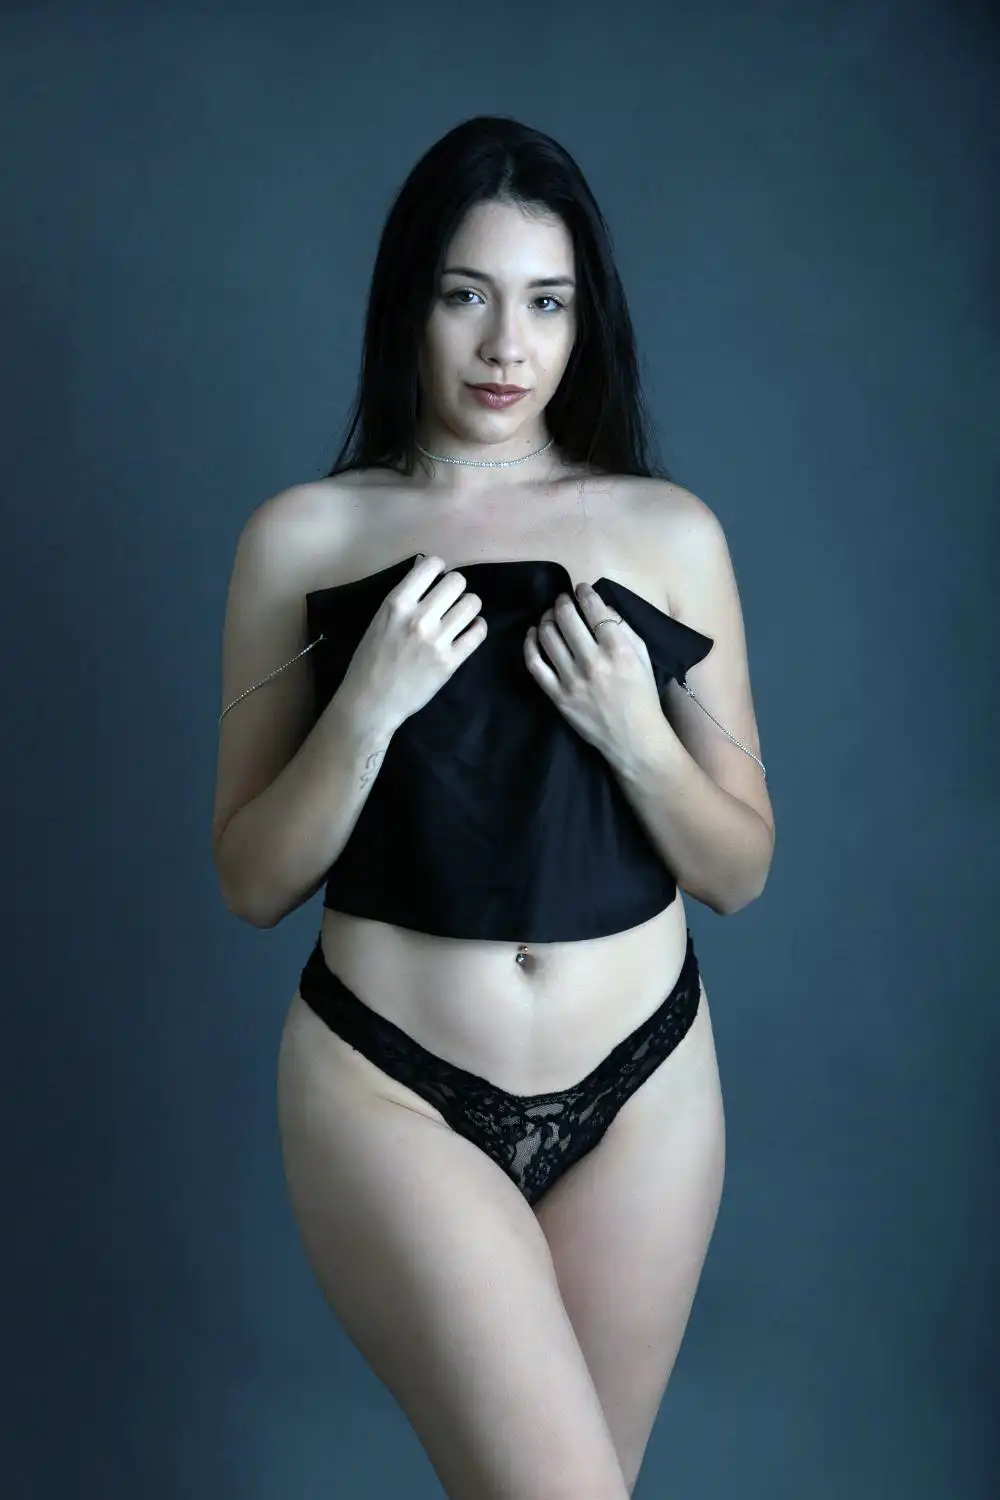 Woman in black underwear